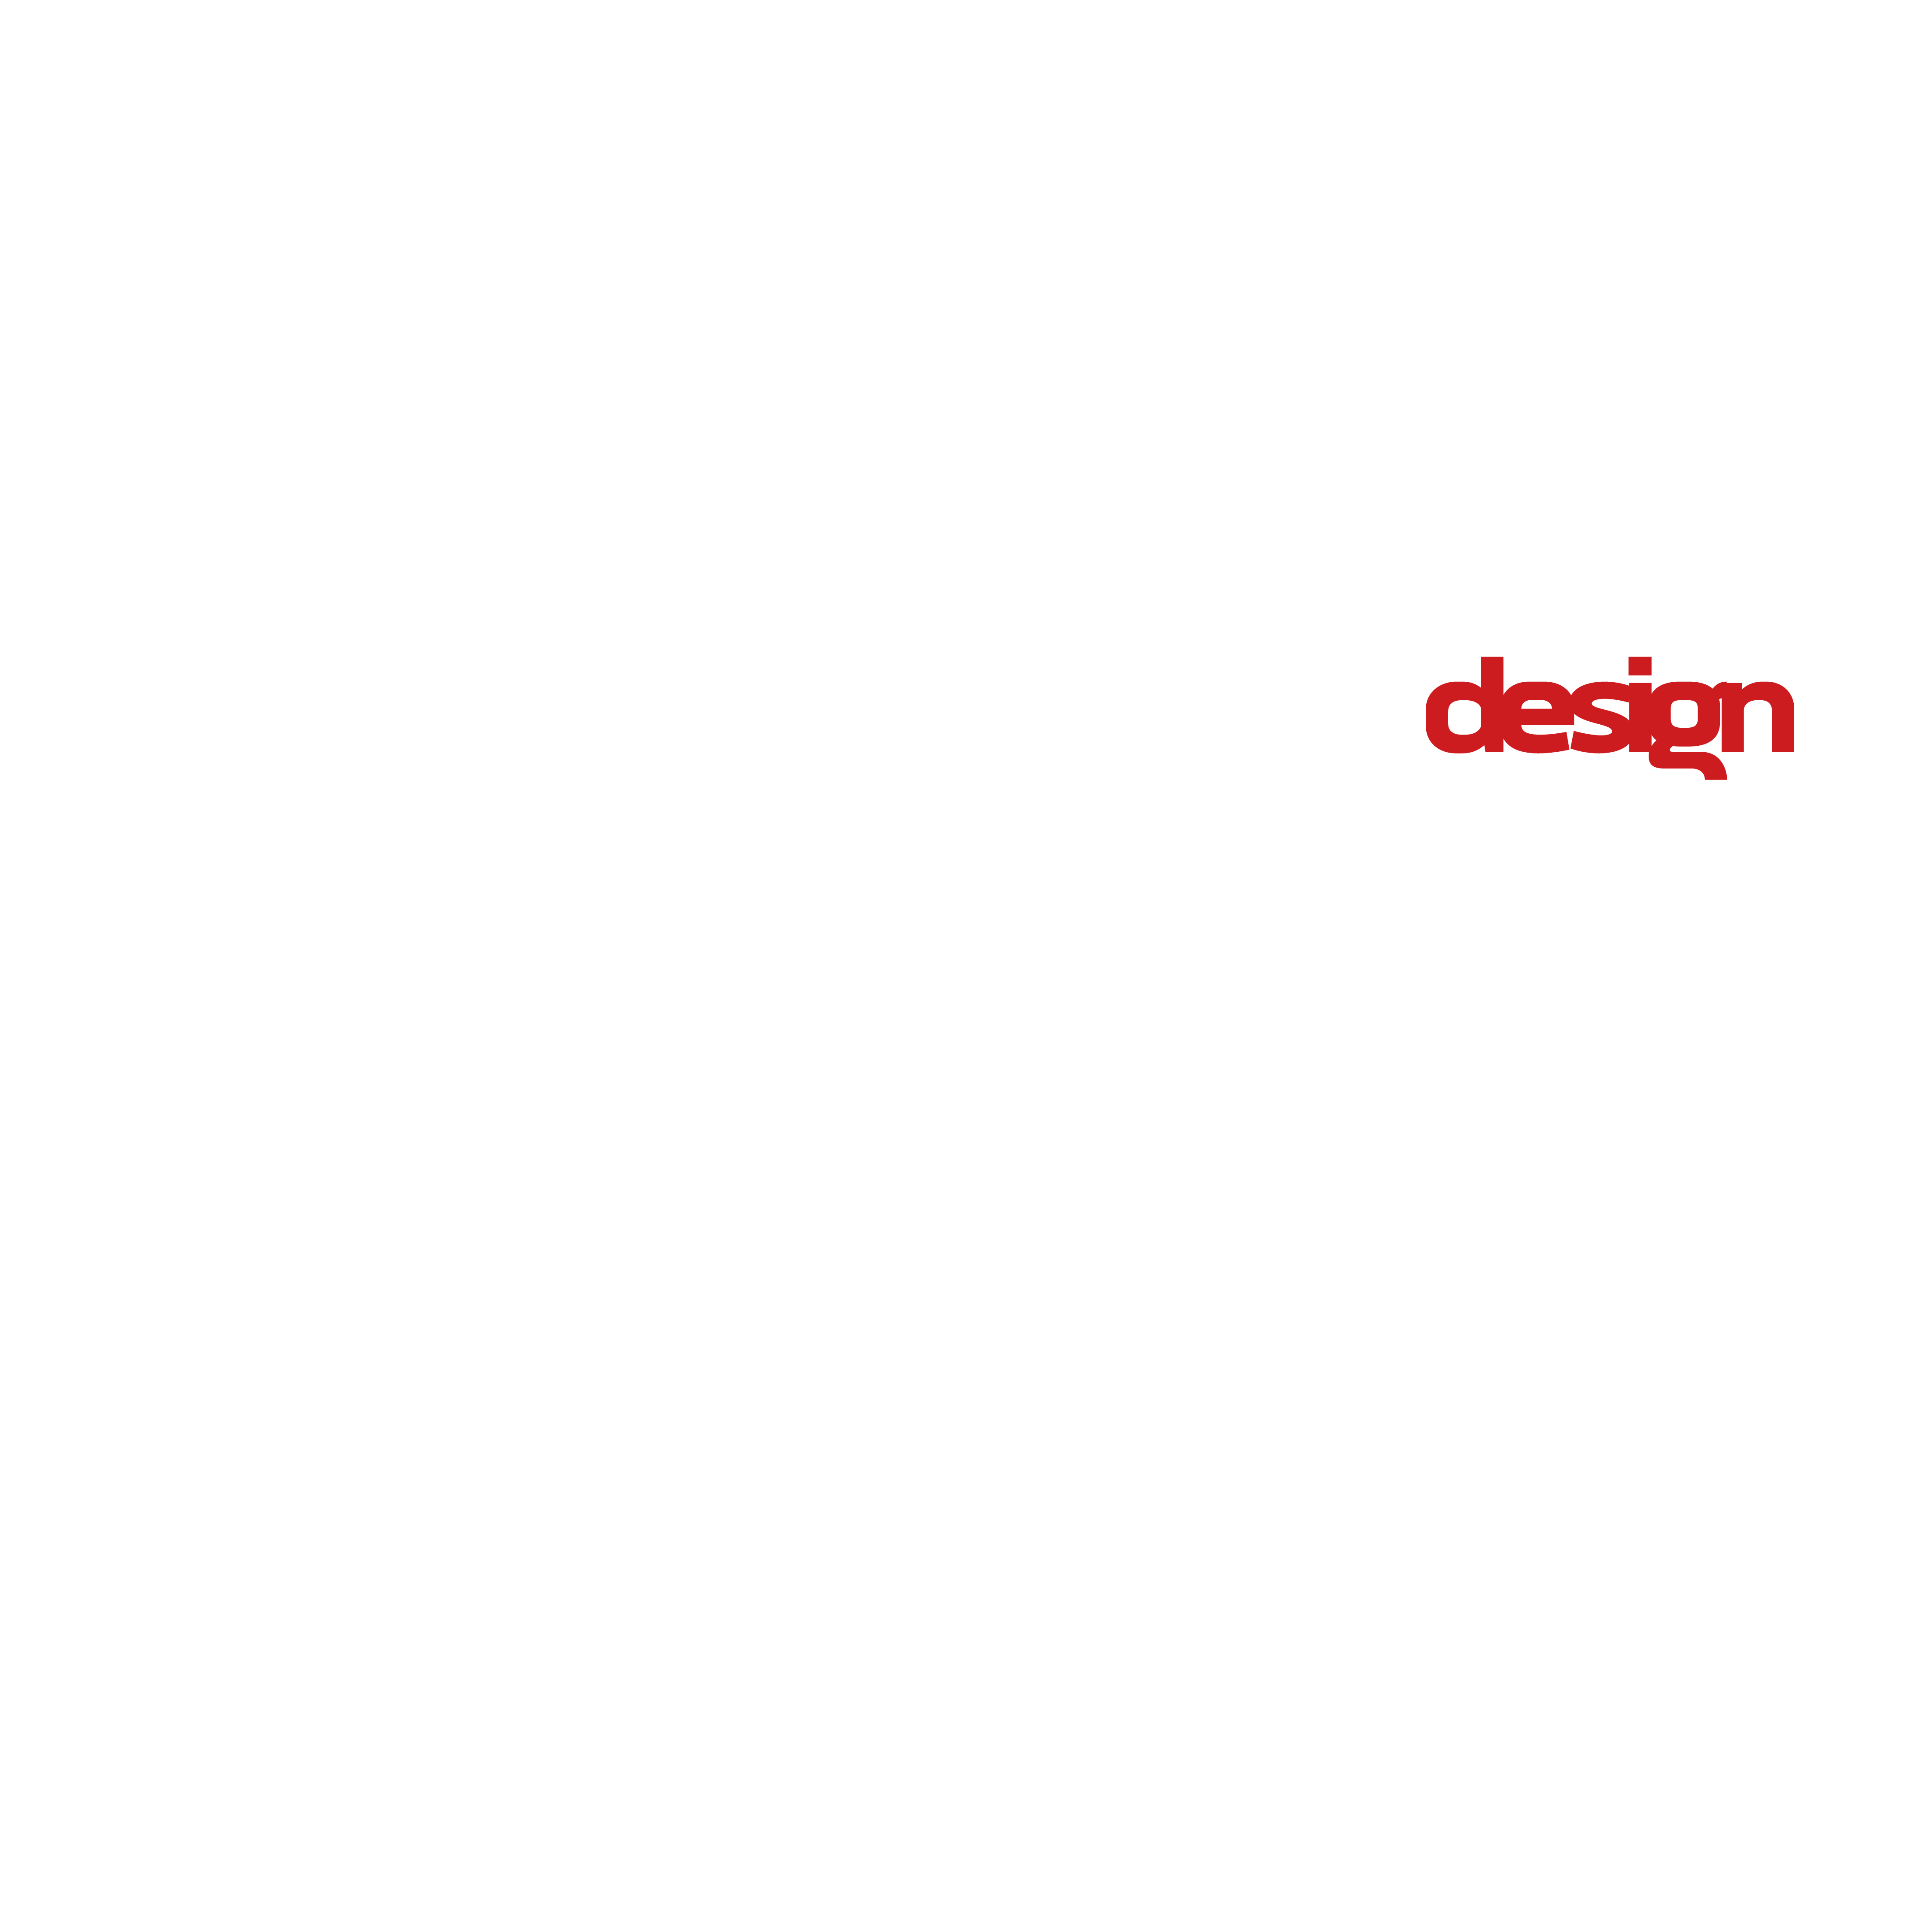 Mogga Design